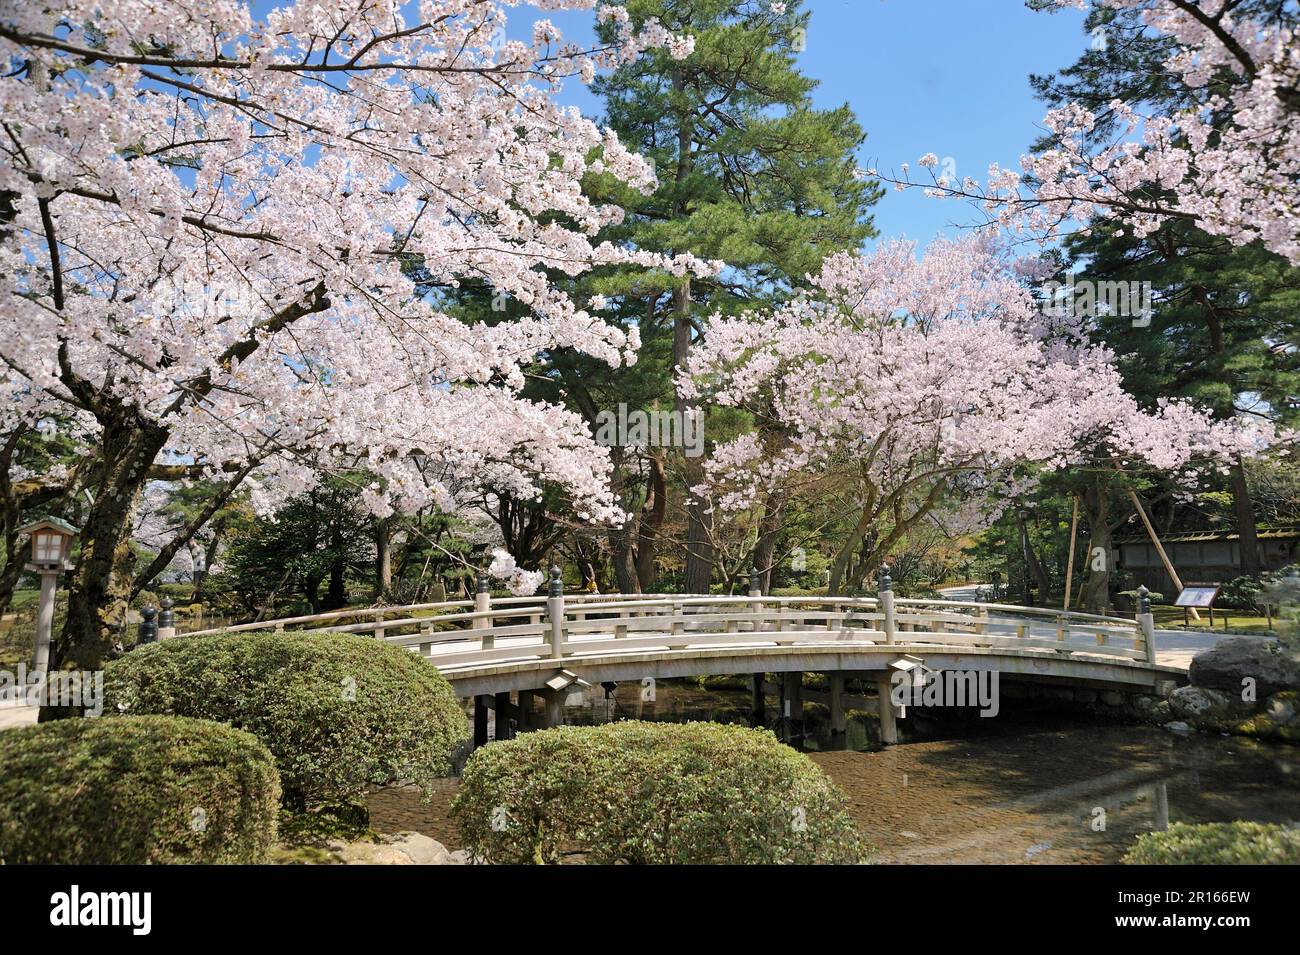 Cherry blossoms in Kenrokuen Garden Stock Photo